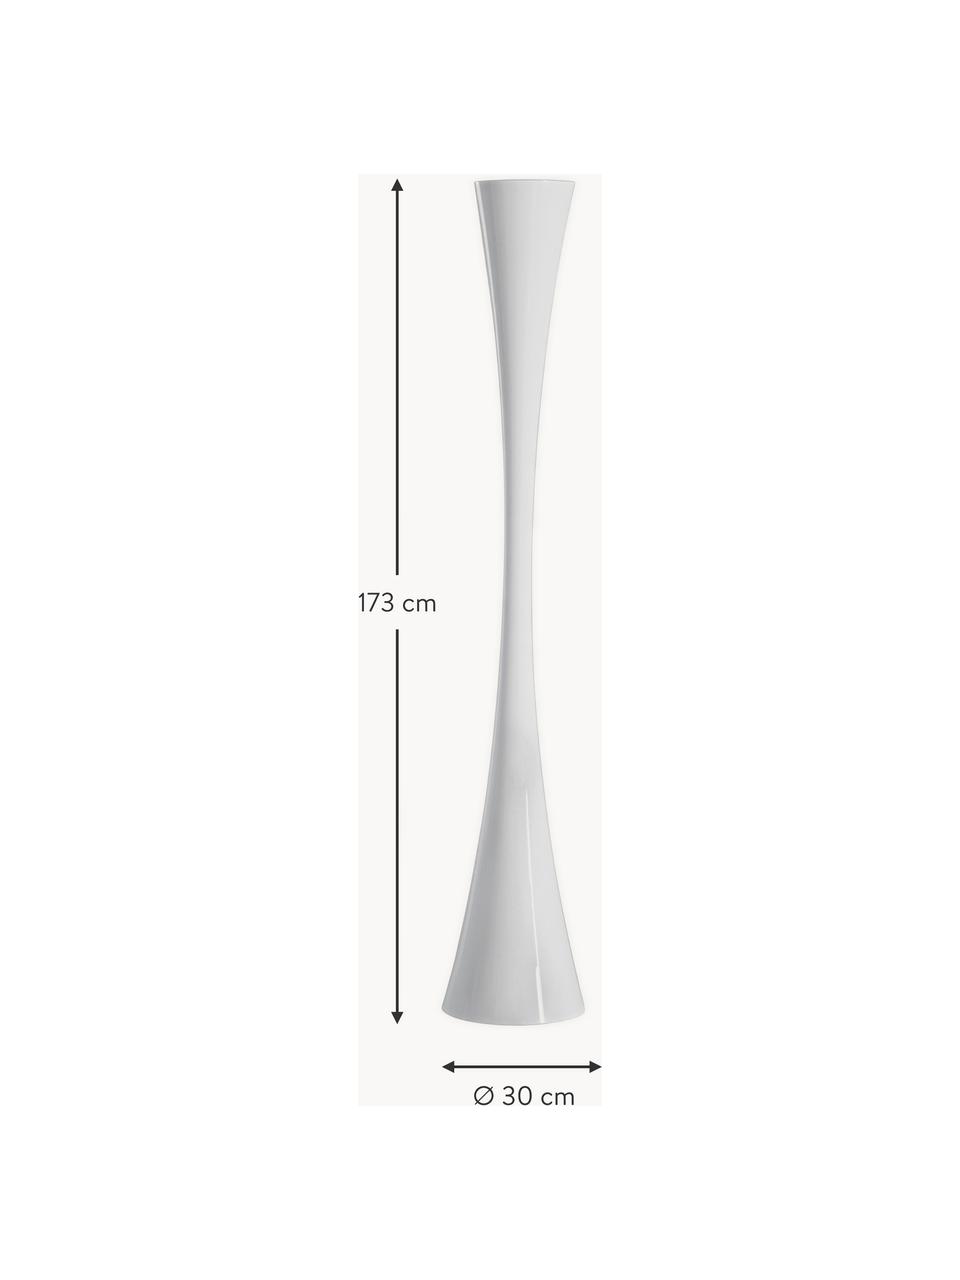 Lampa podłogowa LED Biconica, Tworzywo sztuczne, Biały, W 173 cm